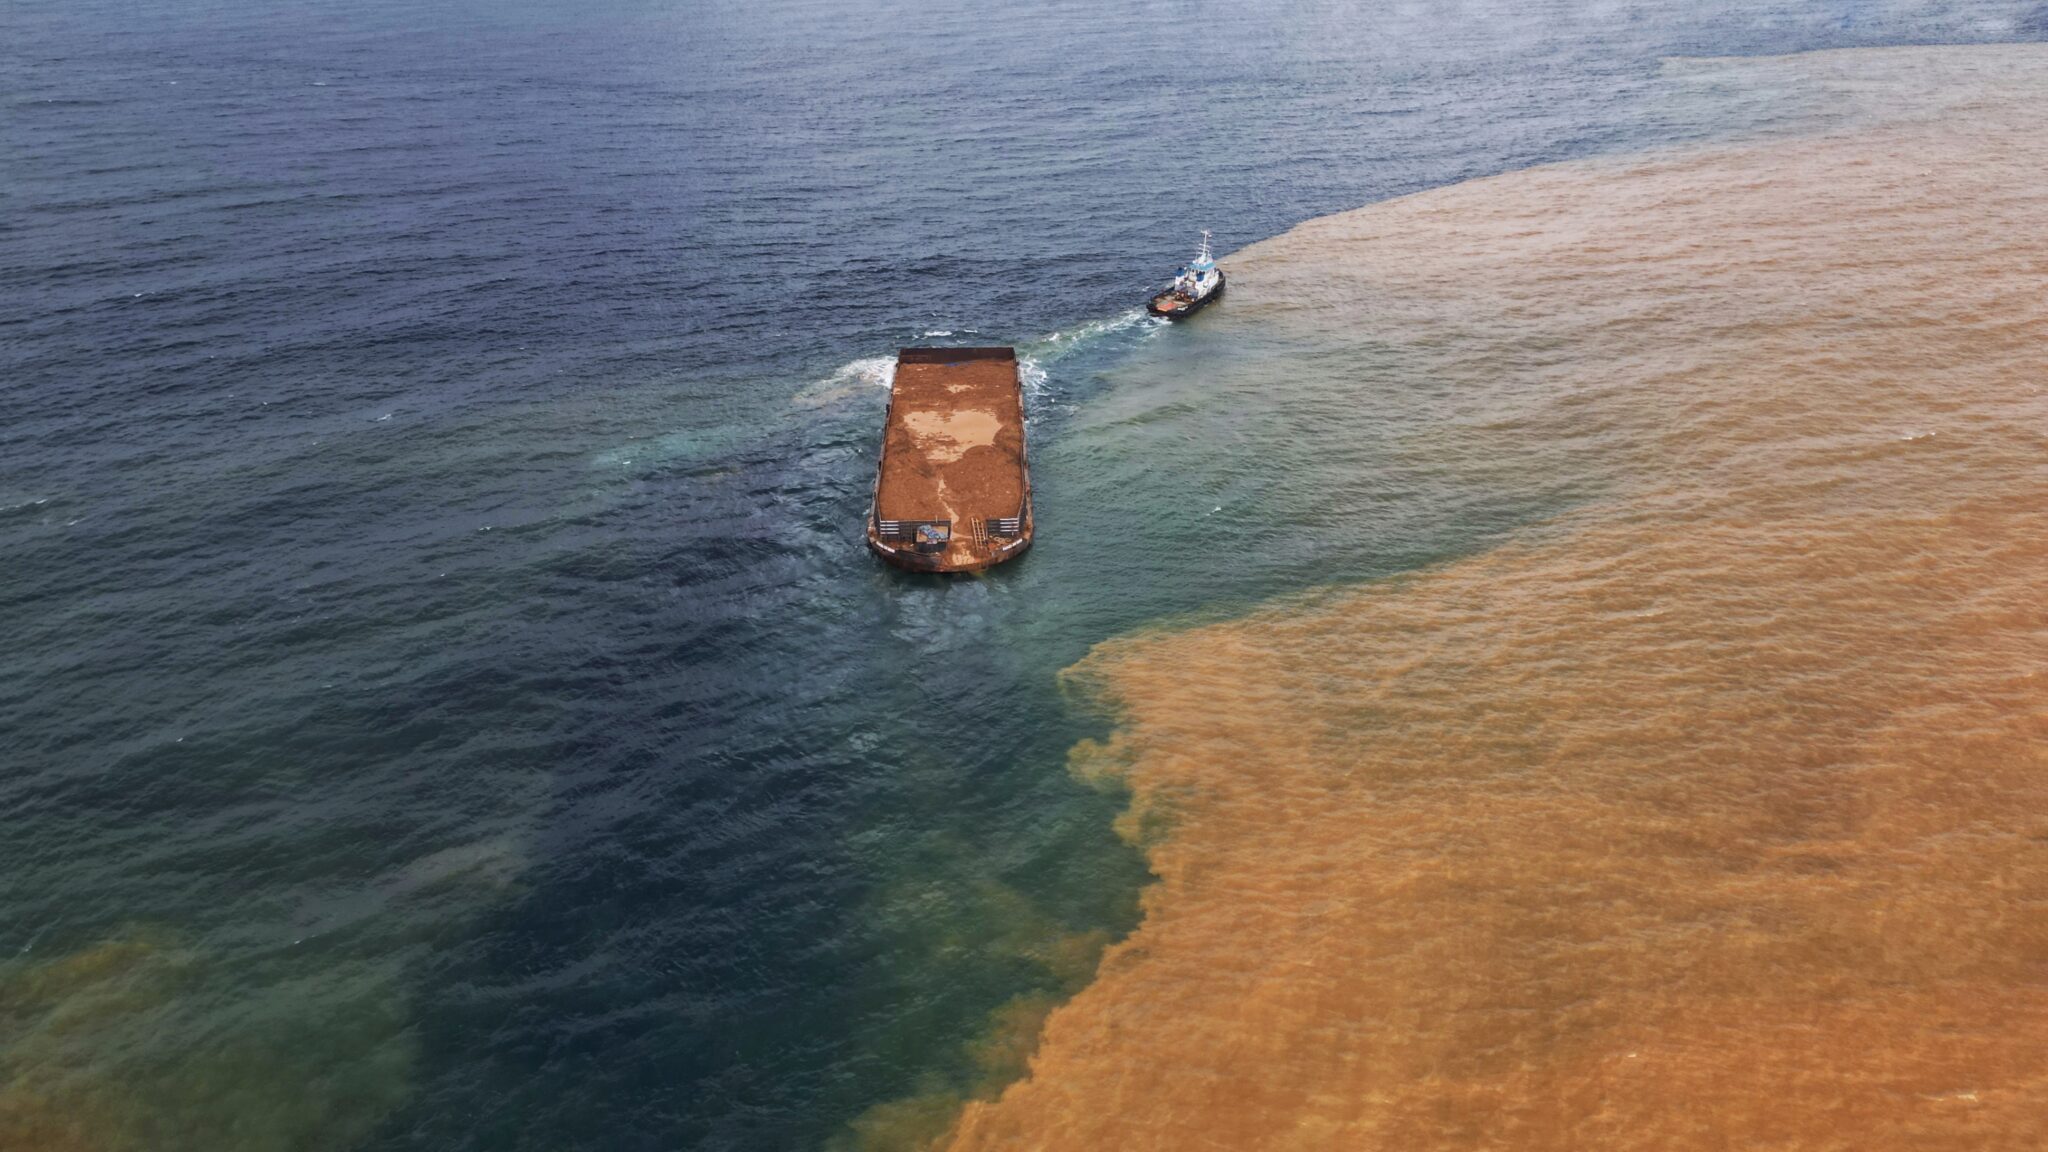 Laut Wawonii dengan sebagian air berubah warga oranye, diduga cemaran ore nikel. Foto: Riza Salman/ Mongabay Indonesia